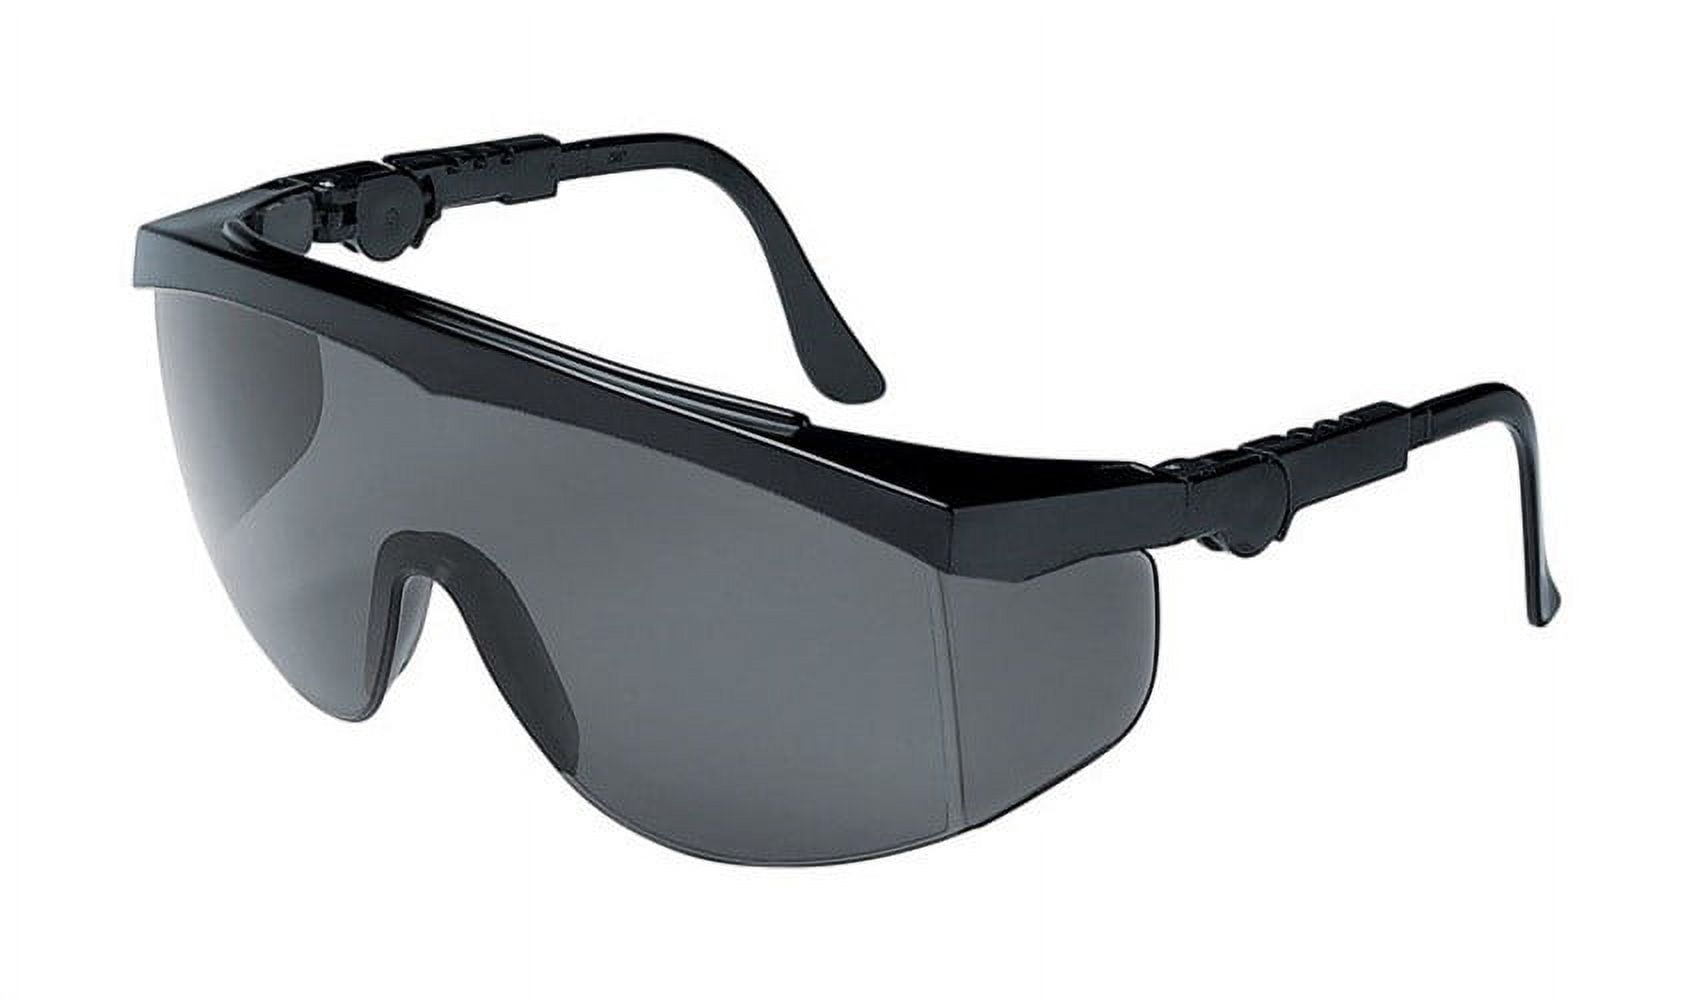 Mcr 2418135 Multi-purpose Safety Glasses Gray Lens With Black Frame, Gray Lens Frame - Pack Of 12